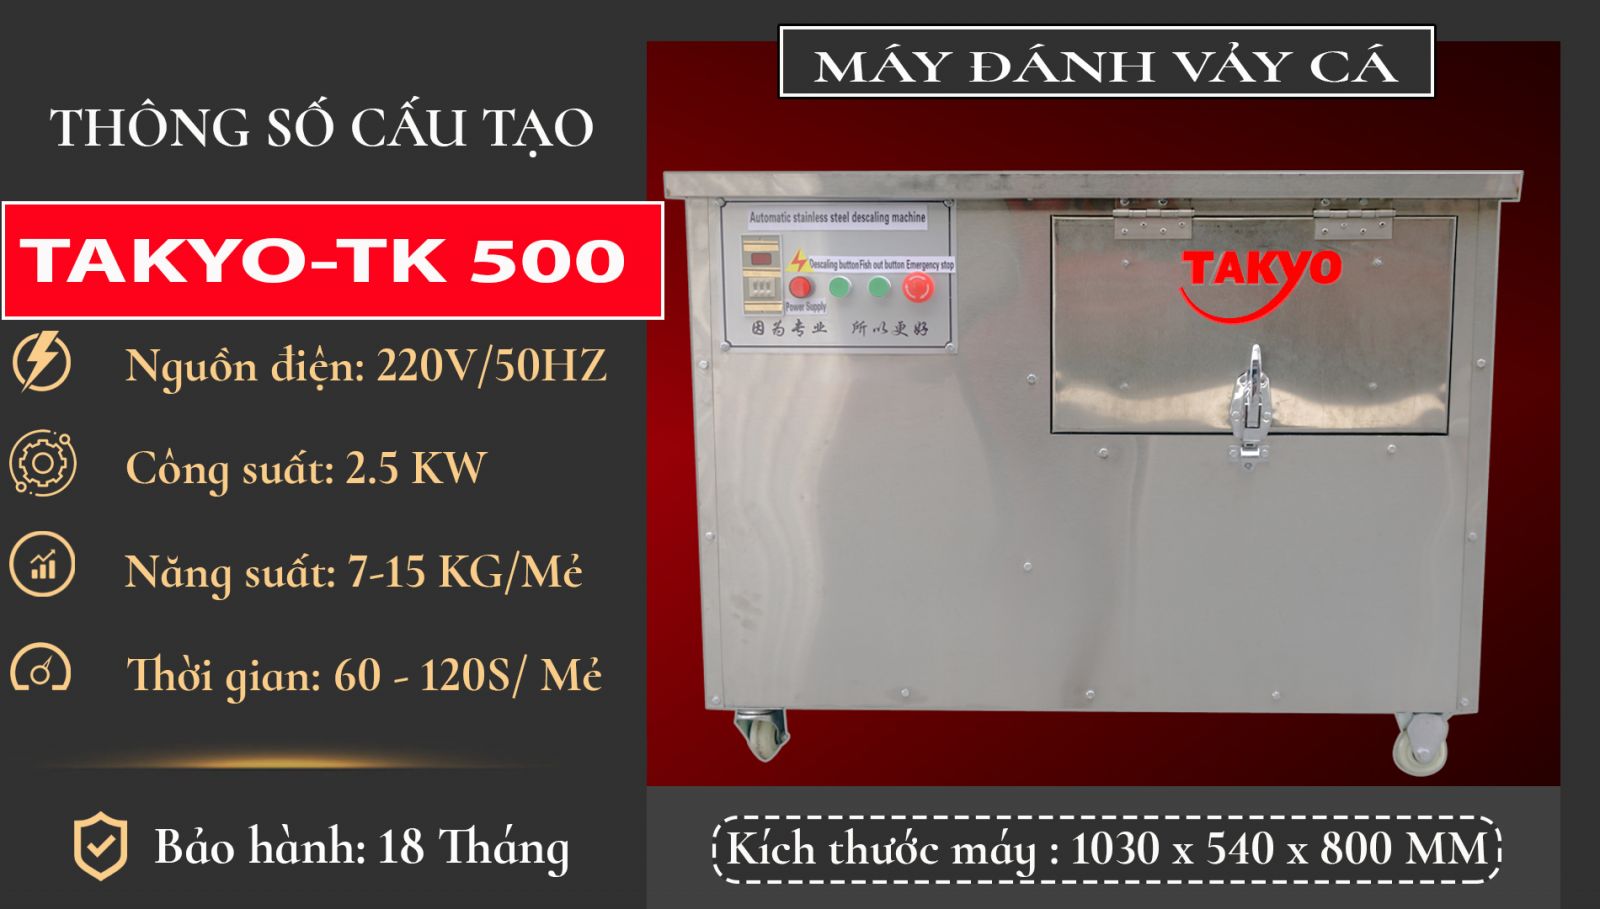 Thong-so-may-danh-vay-ca-takyo-tk-500